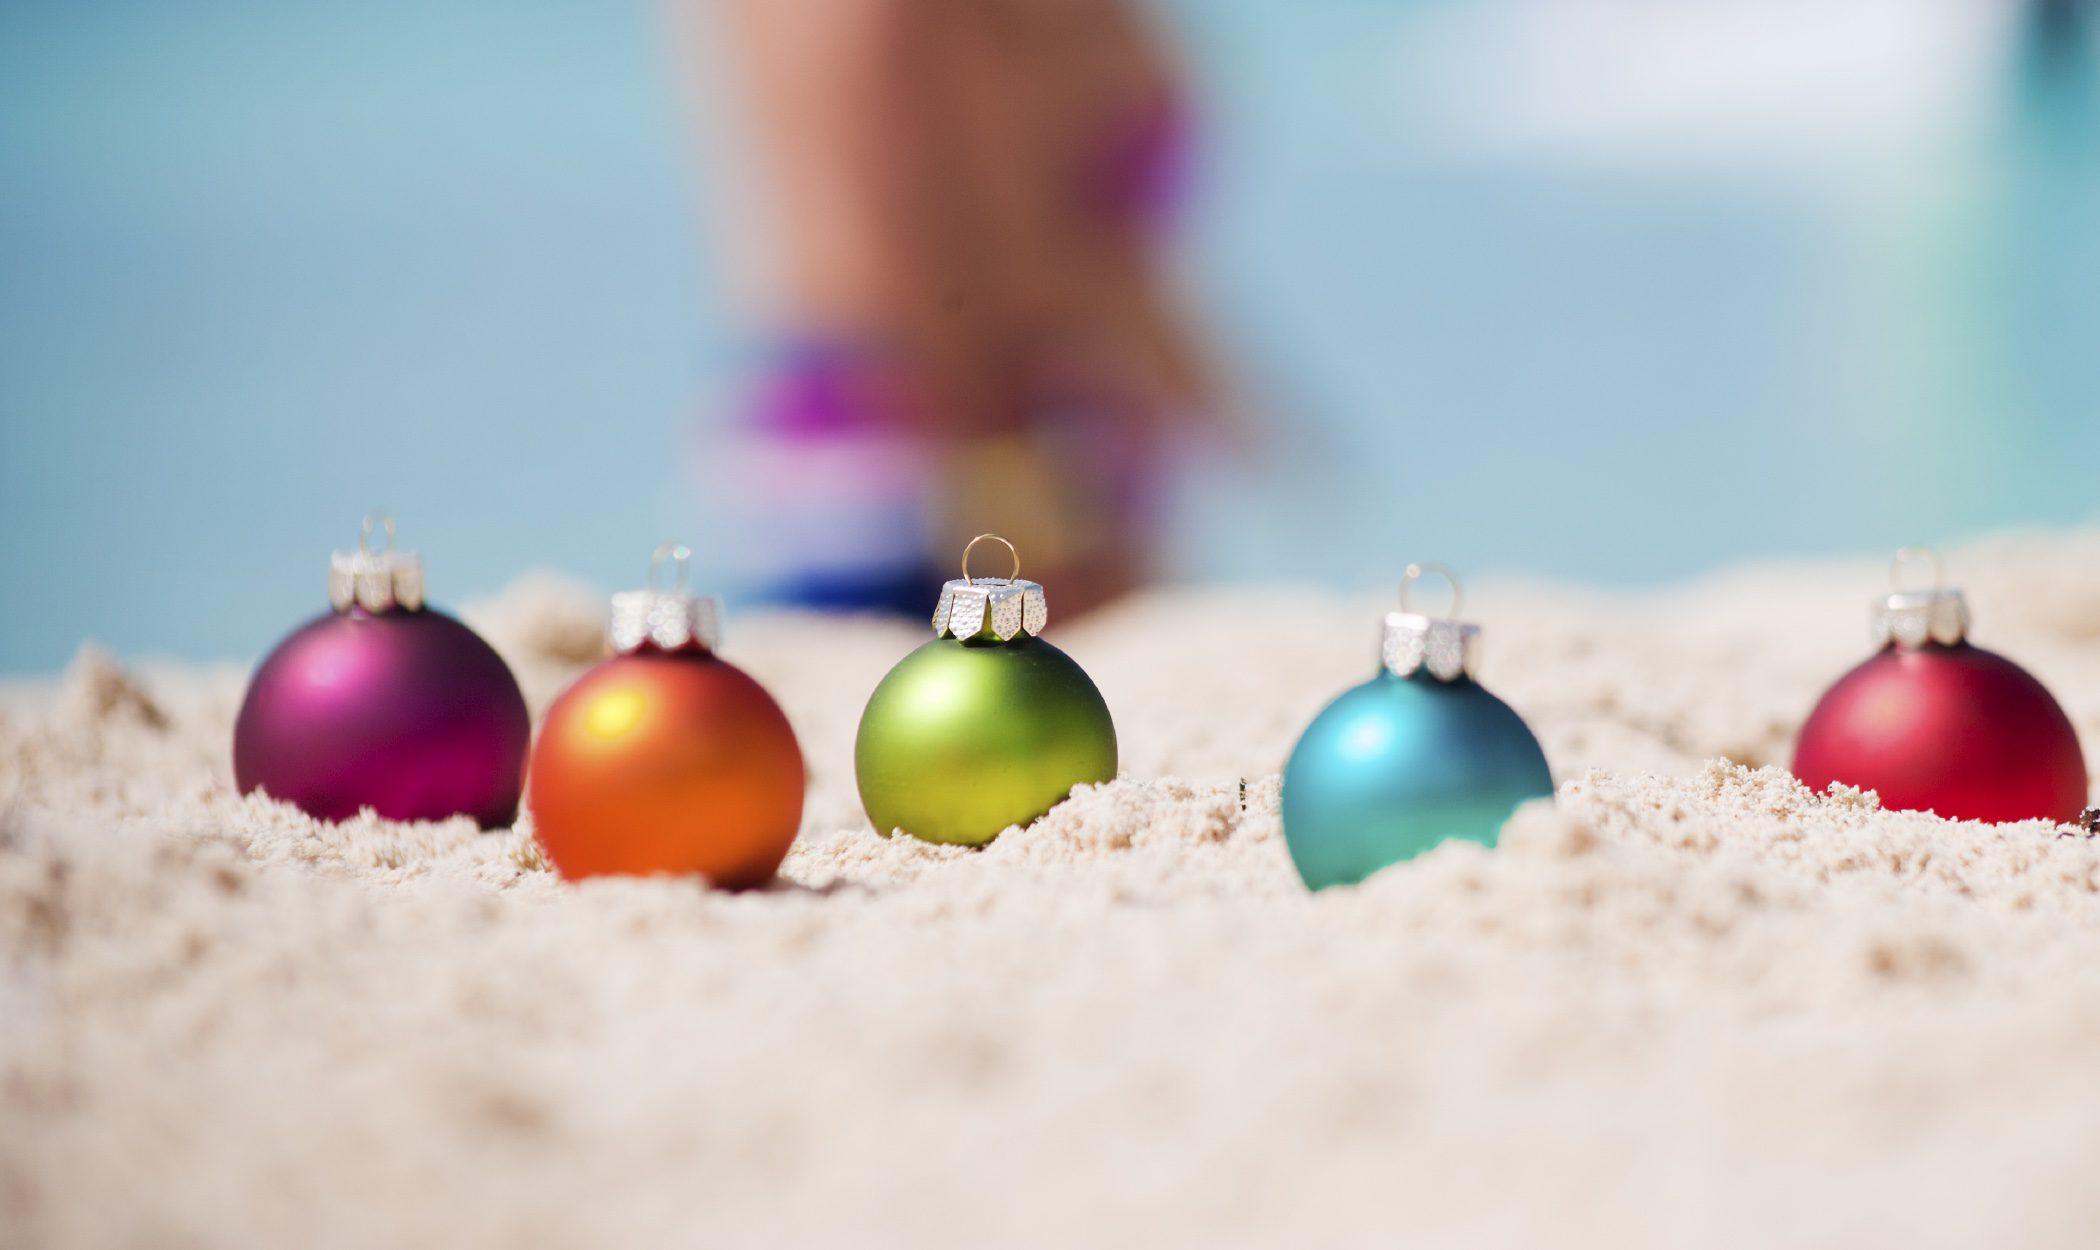 Navidad en el Caribe: fiestas navideñas bajo el sol